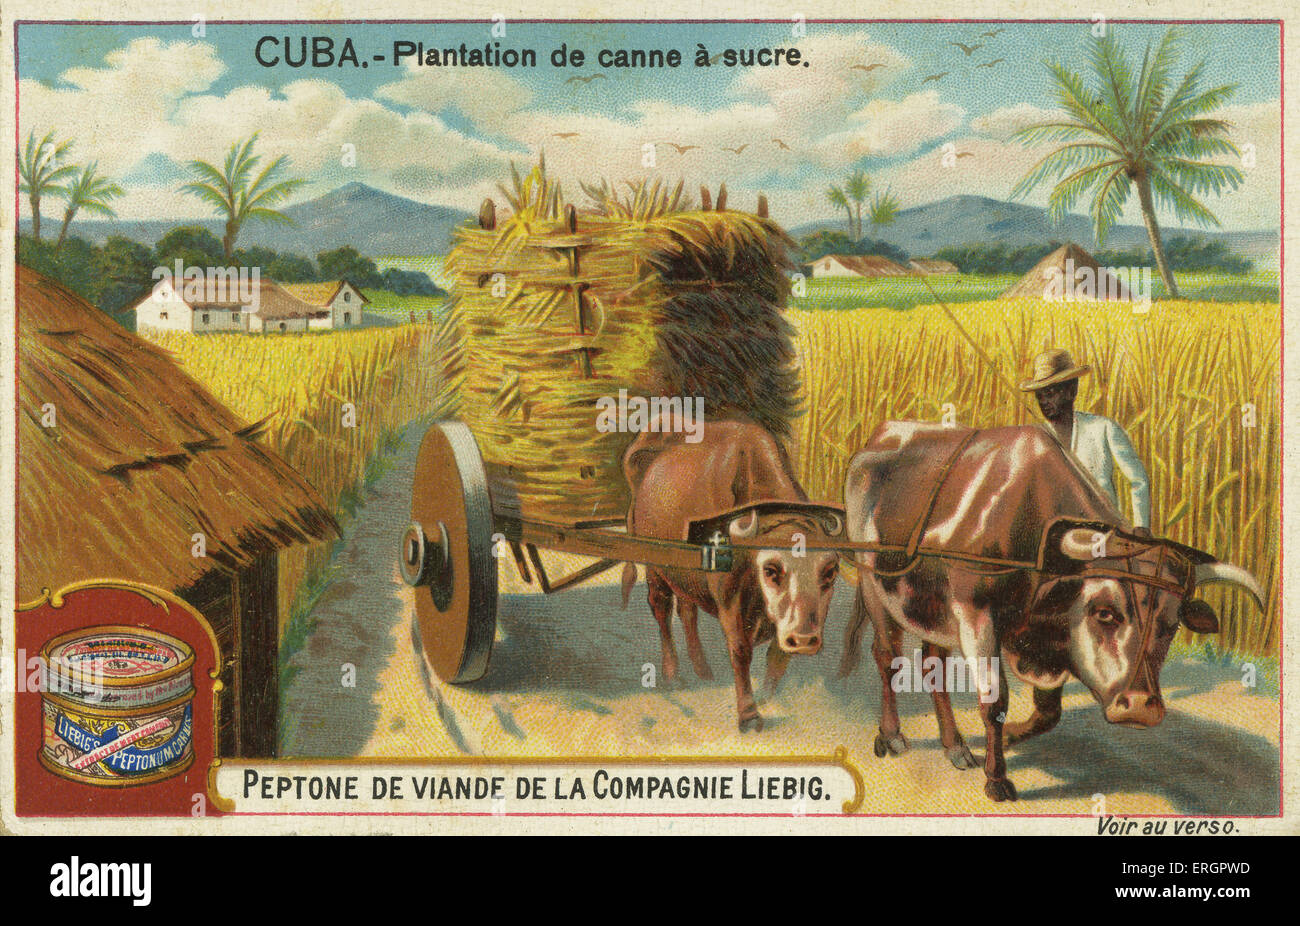 Plantación de azúcar, Cuba, siglo XIX. Unidades de agricultor una carreta de bueyes cargados con caña de azúcar. Desde una tarjeta de receta para Liebig 's Foto de stock